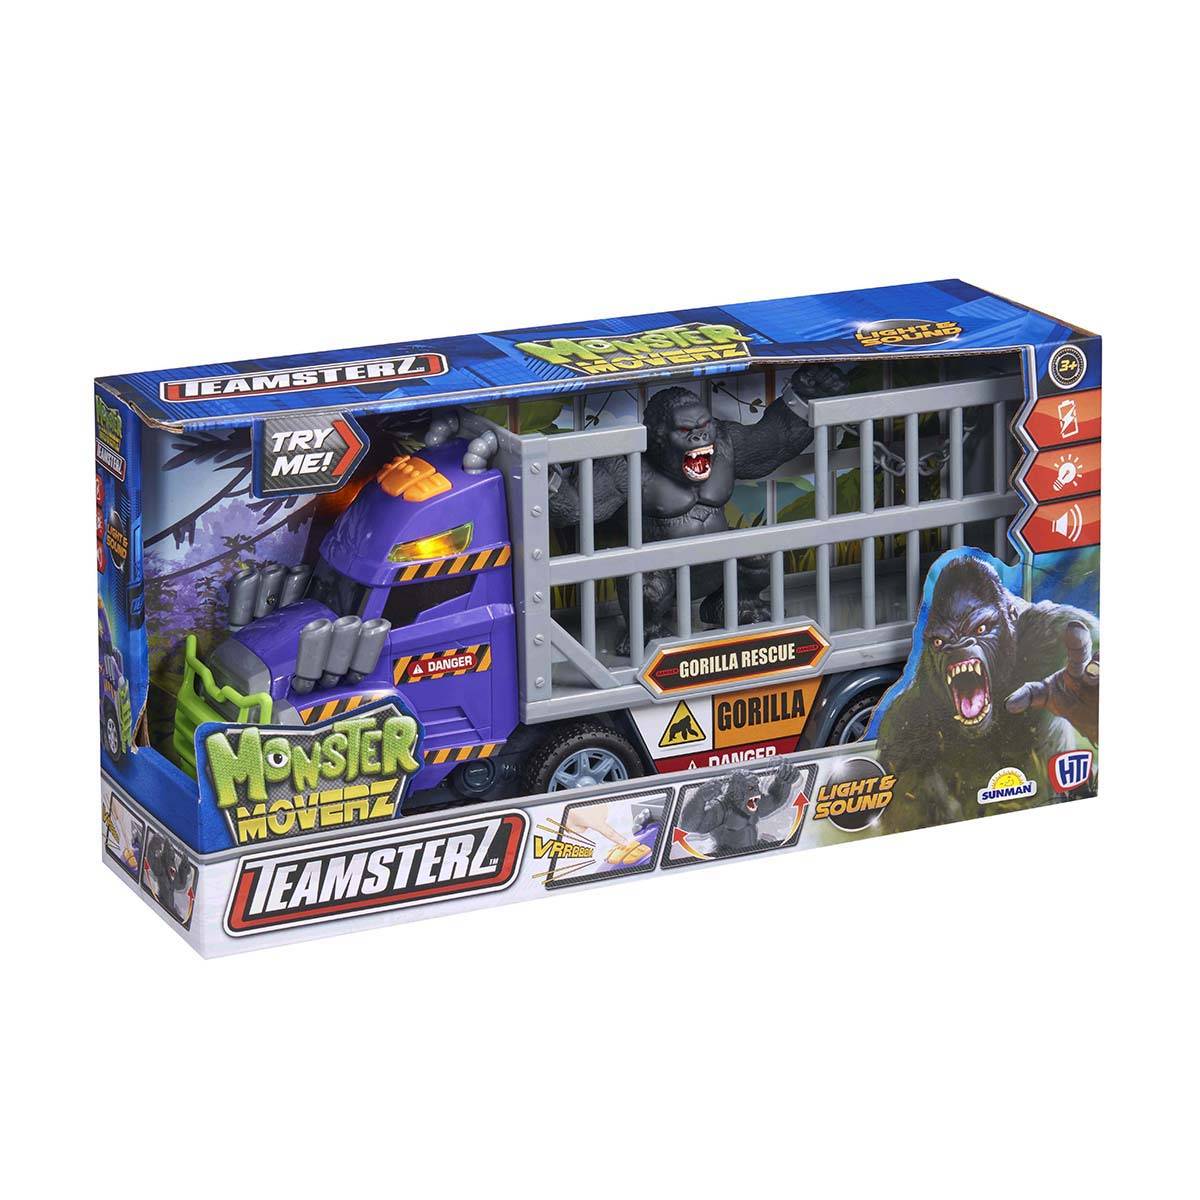 Teamsterz Monster Moverz Gorilla Rescue Sesli ve Işıklı Oyun Seti